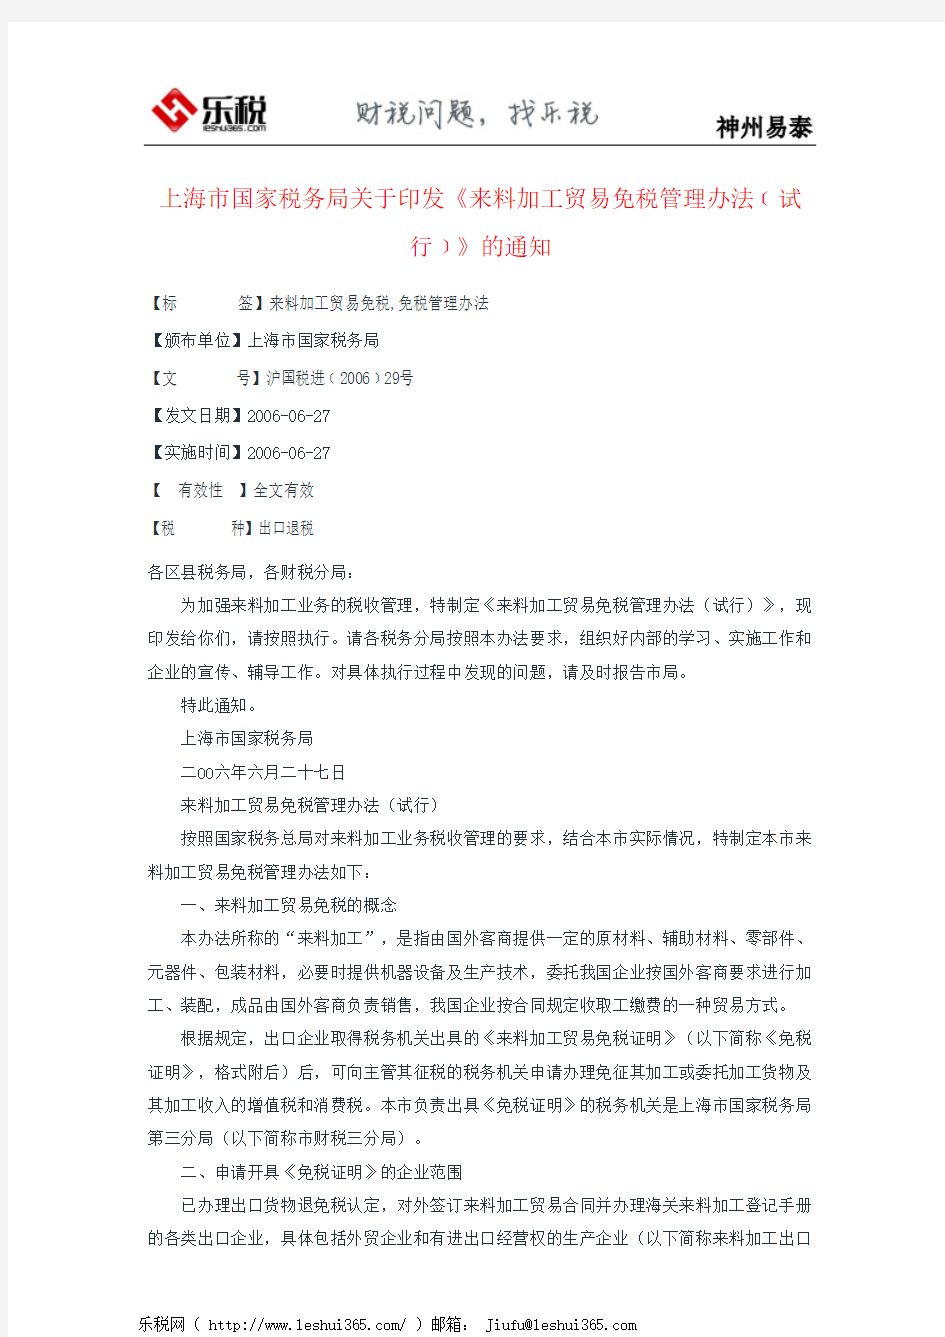 上海市国家税务局关于印发《来料加工贸易免税管理办法﹝试行﹞》的通知